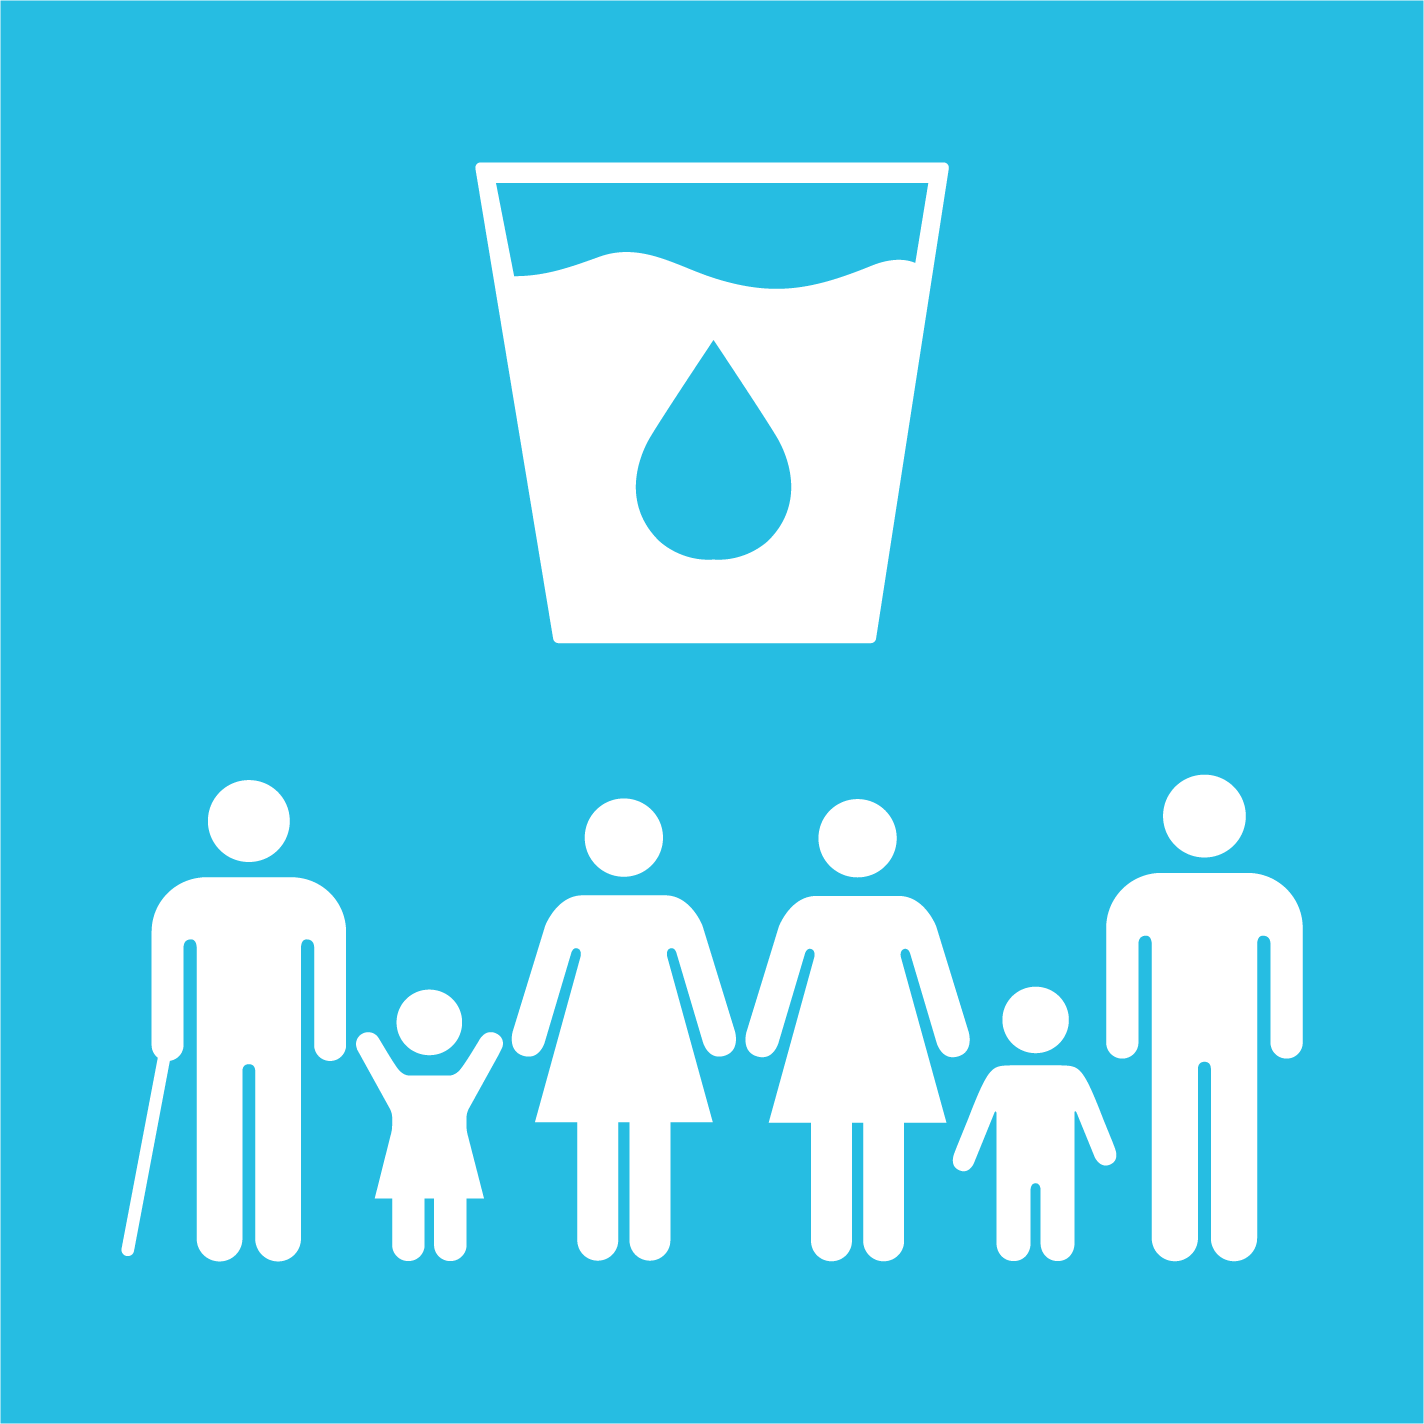 6.1 - Agua potable segura y asequible